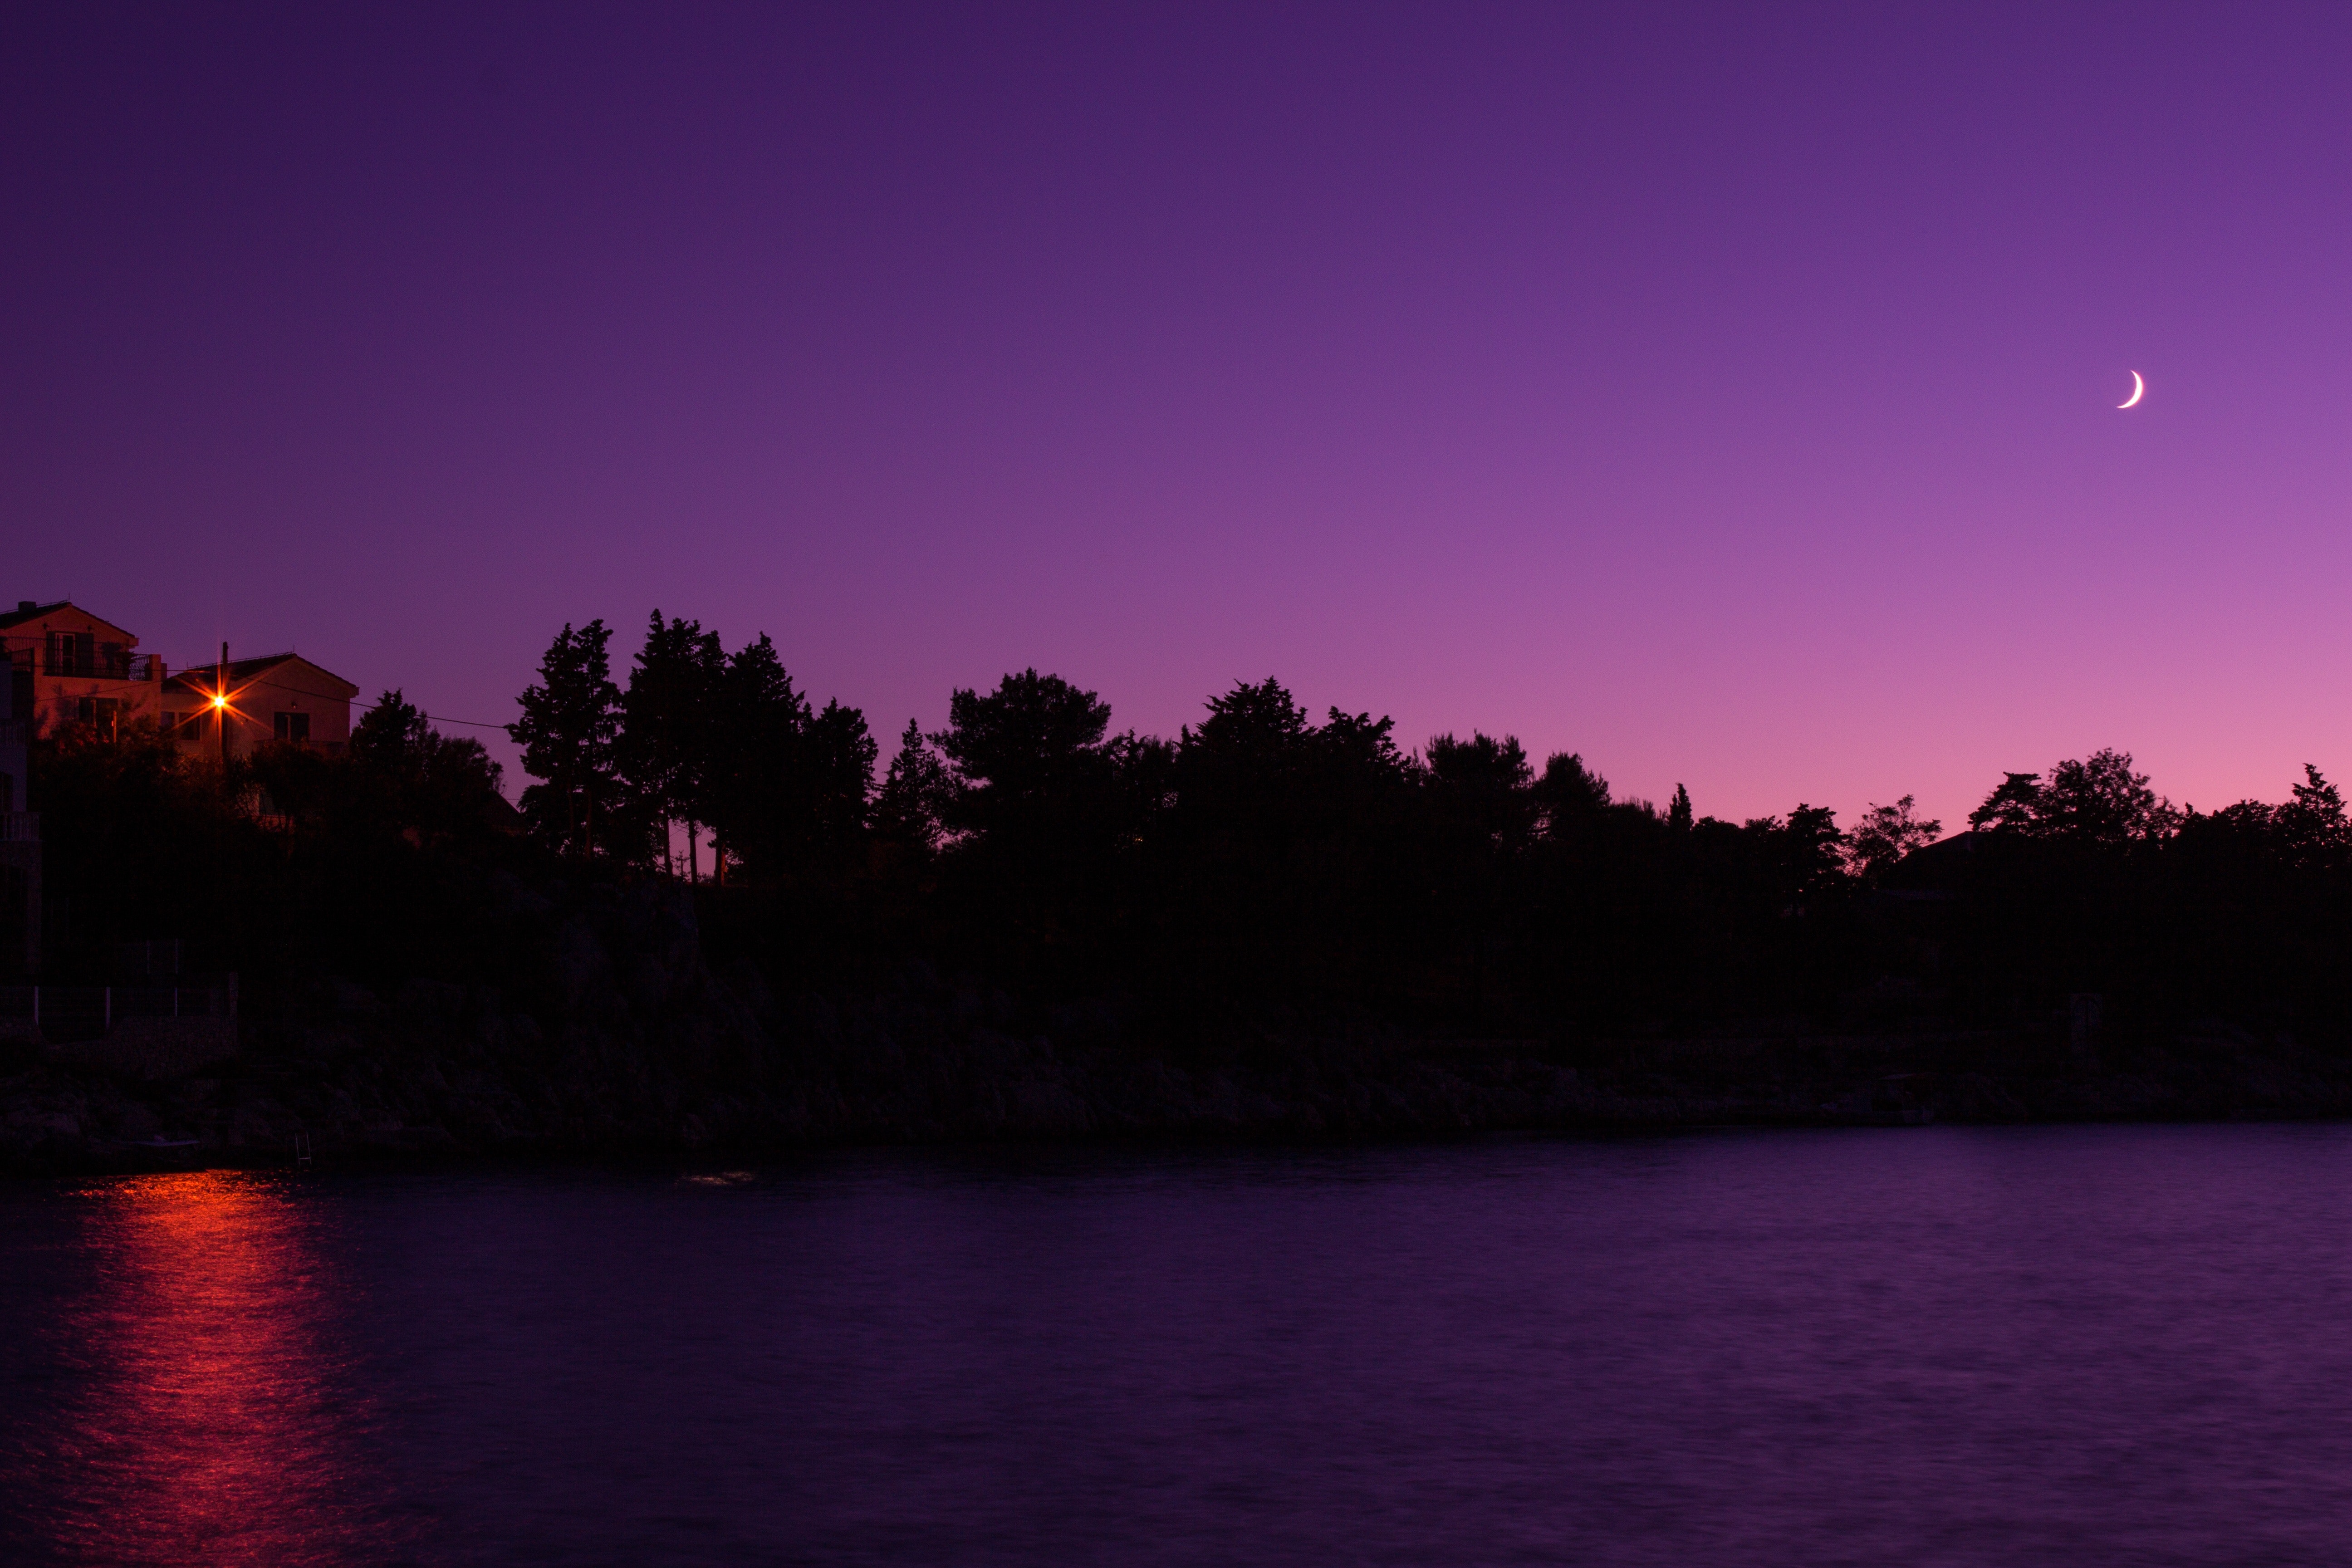 Tree silhouette under purple sky during night photo